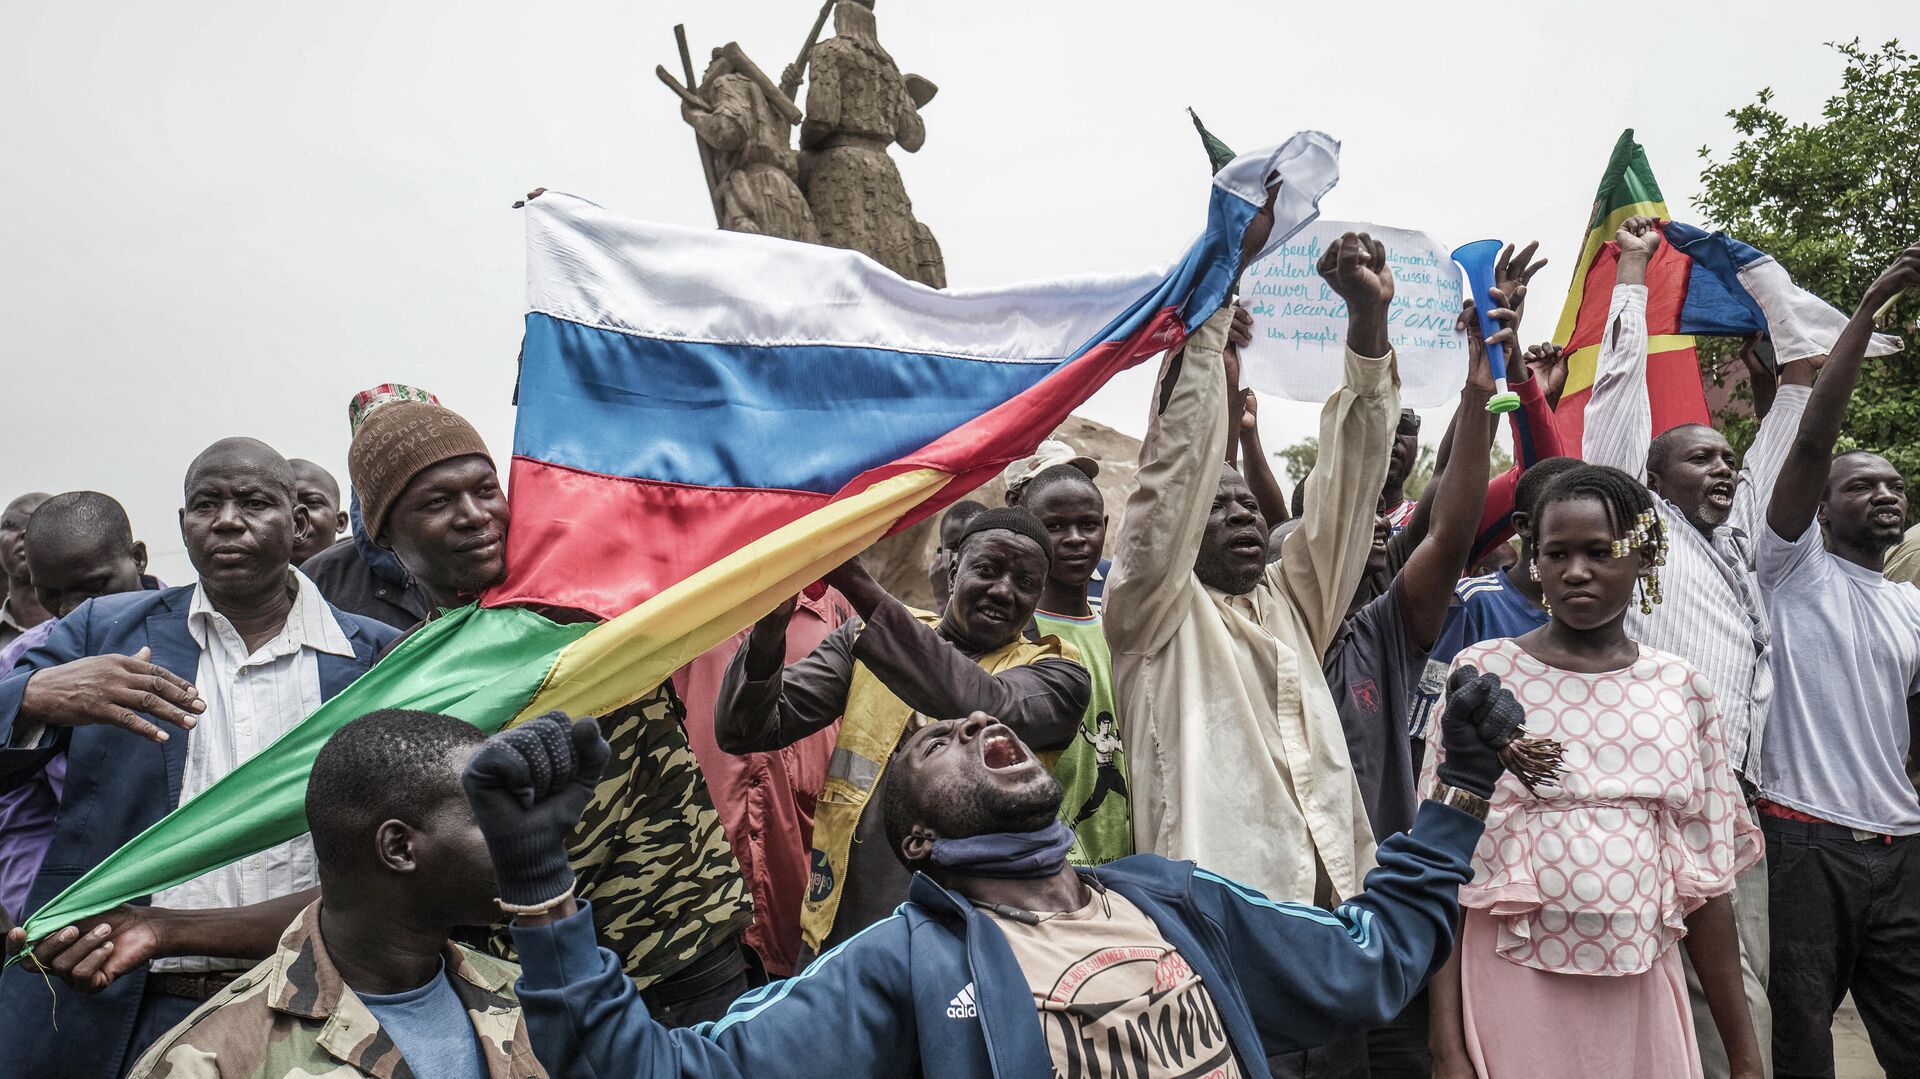 Протестующие размахивают национальными и российскими флагами в столице Мали на демонстрации против французского влияния, 27 мая 2021 года - Sputnik Латвия, 1920, 10.01.2022